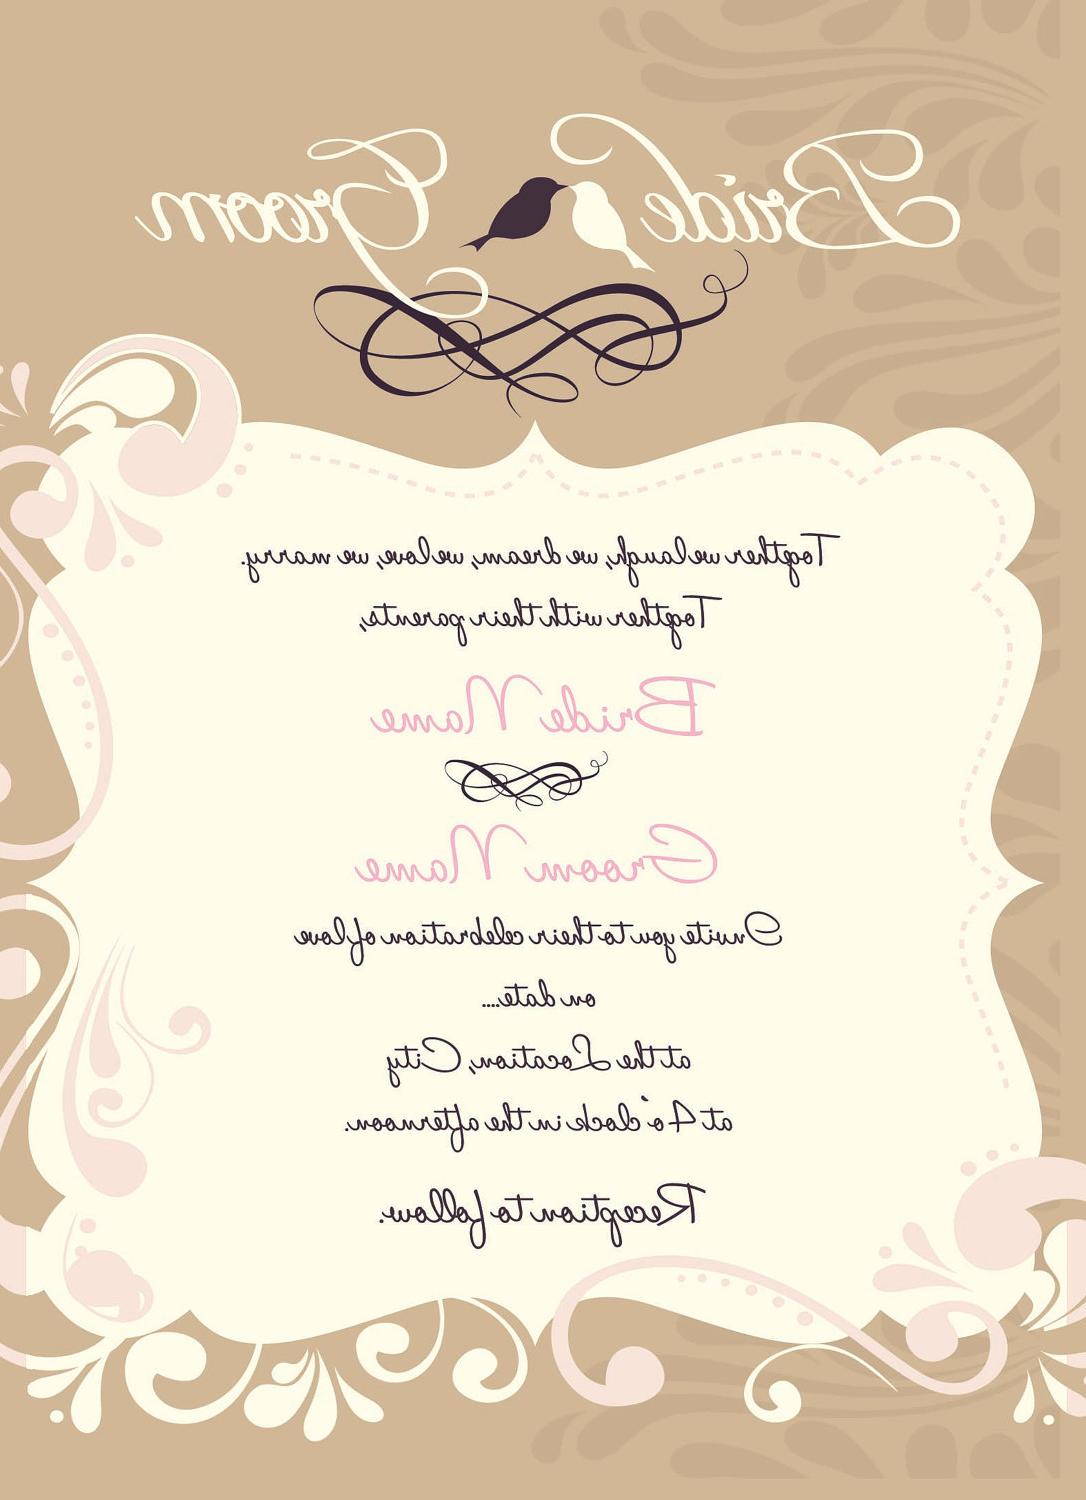 Wedding   Vow Renewal Invitation - I Design, You Print - Digital File Design